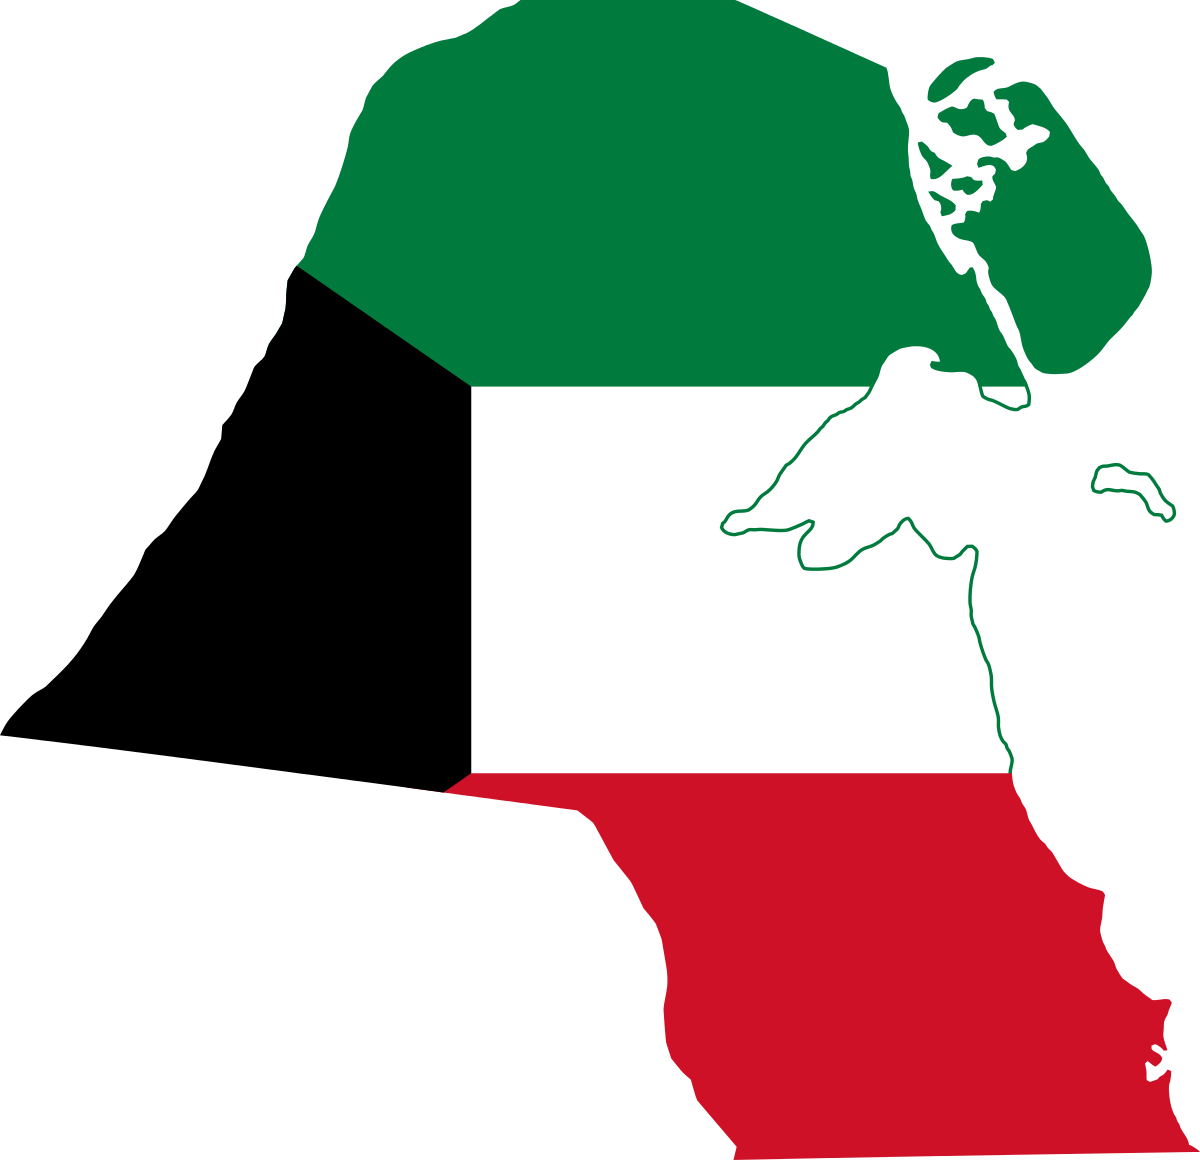 Kuwait Flag PNG HD Quality